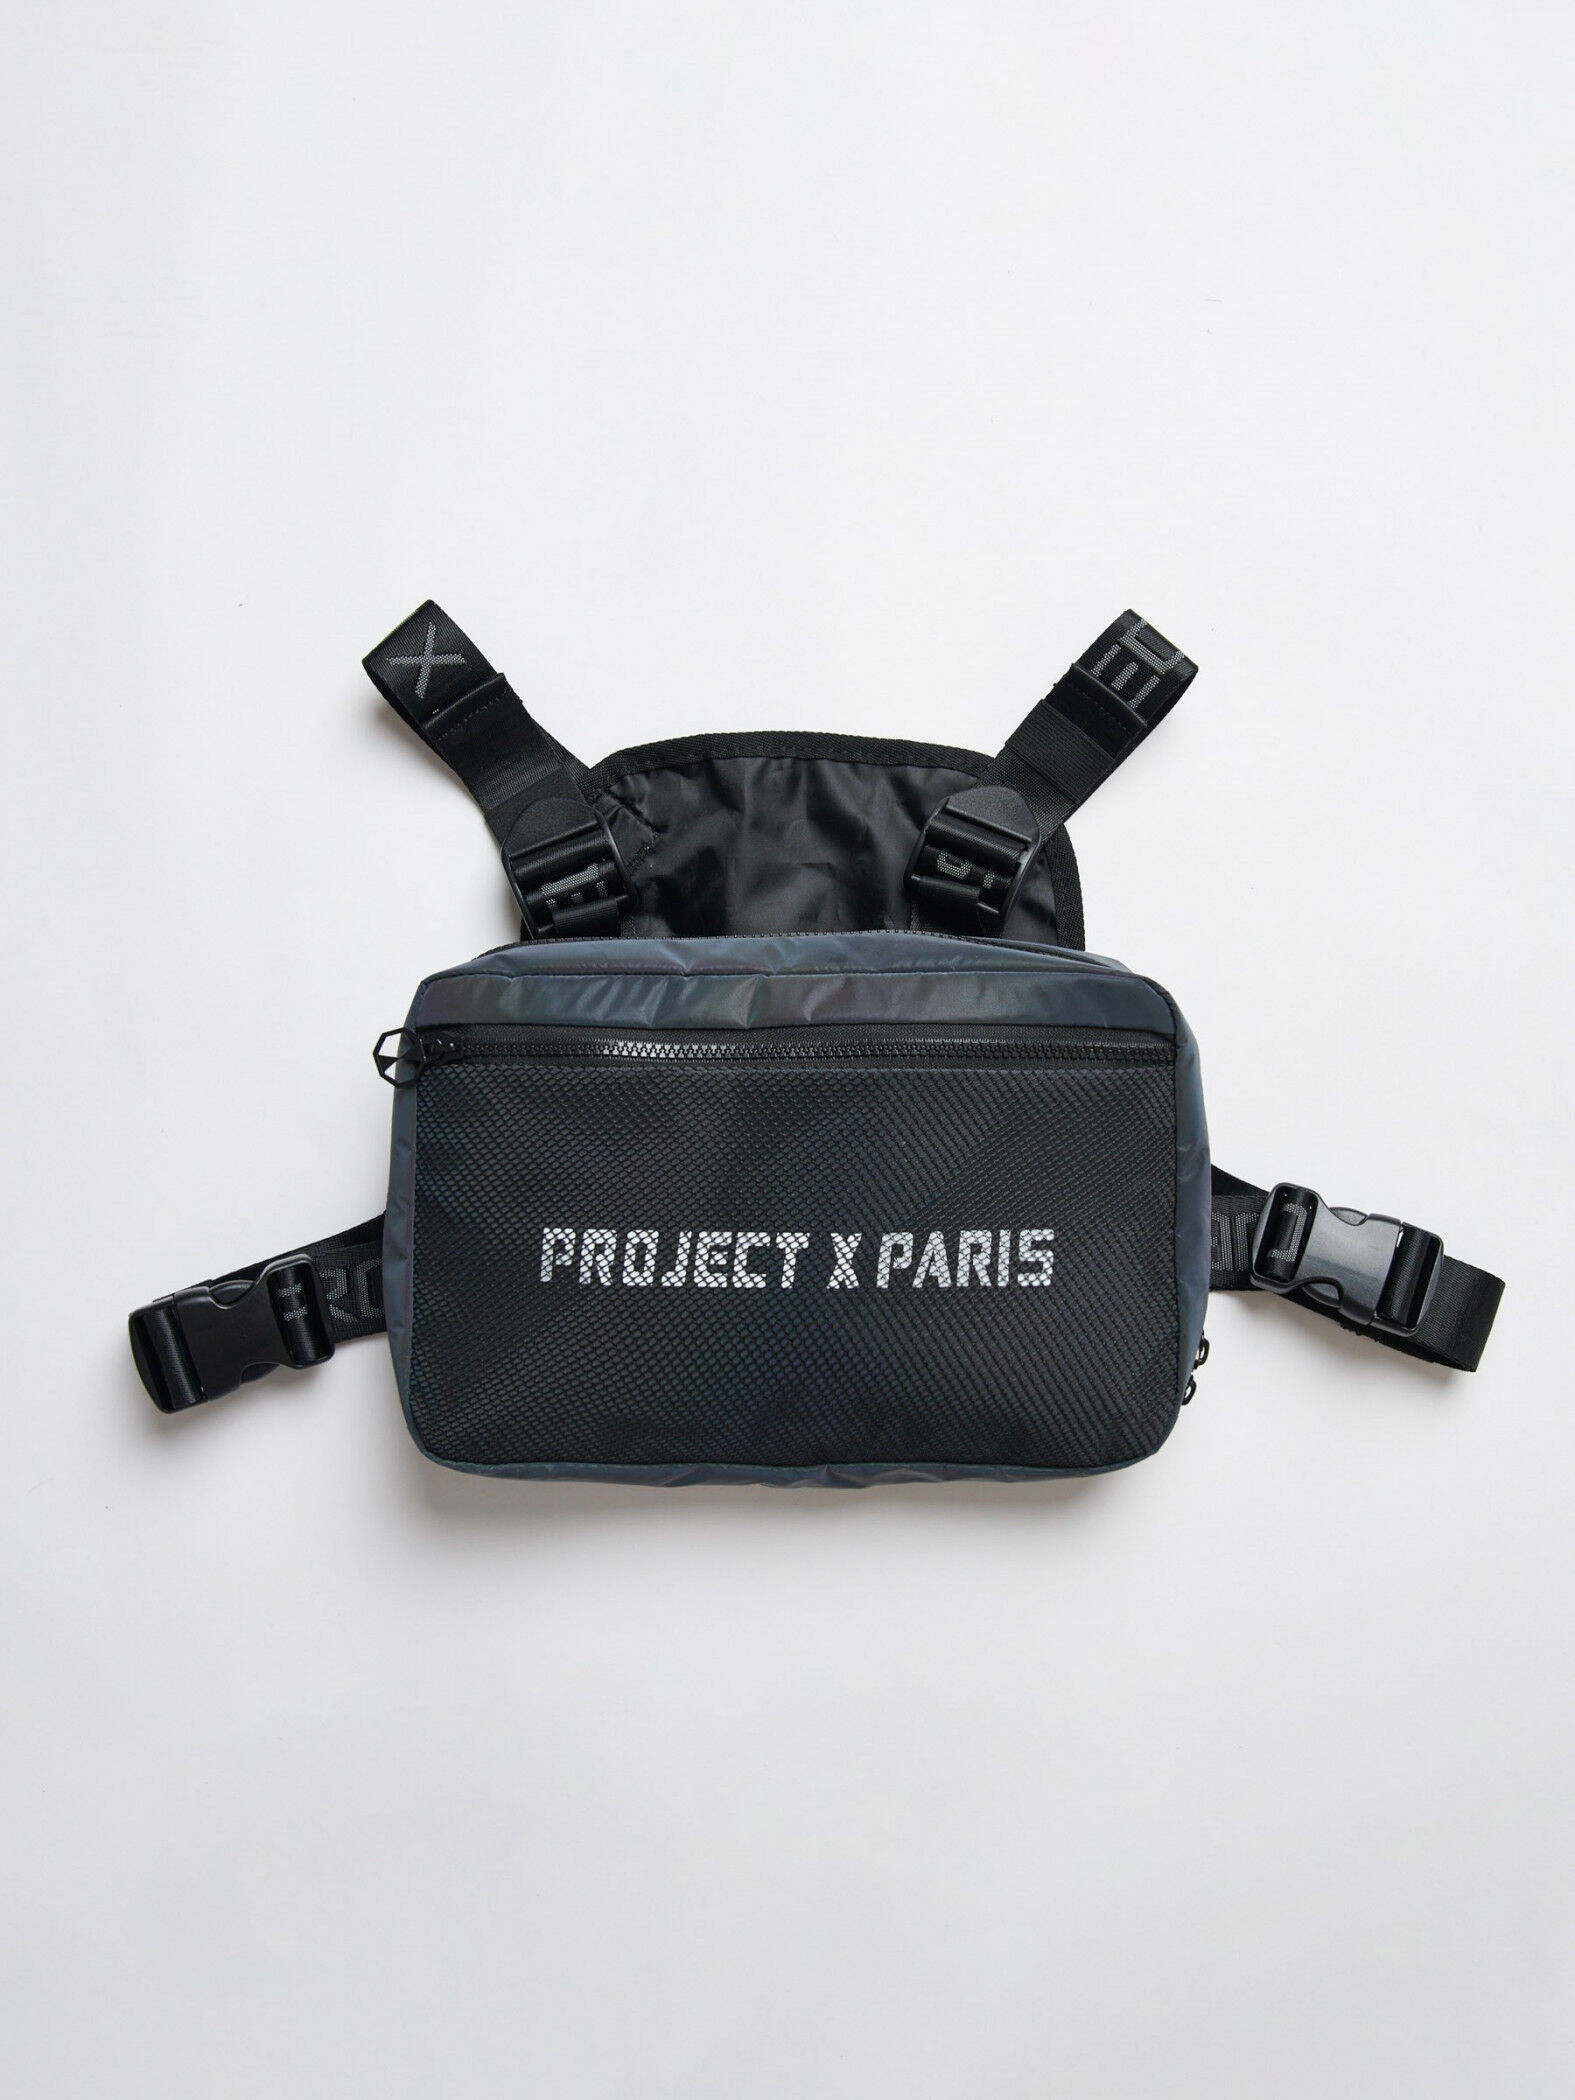 Project X Paris Sac poitrine logo - Sacoche poitrine - Couleur - Réfléchissant, Taille - Unique